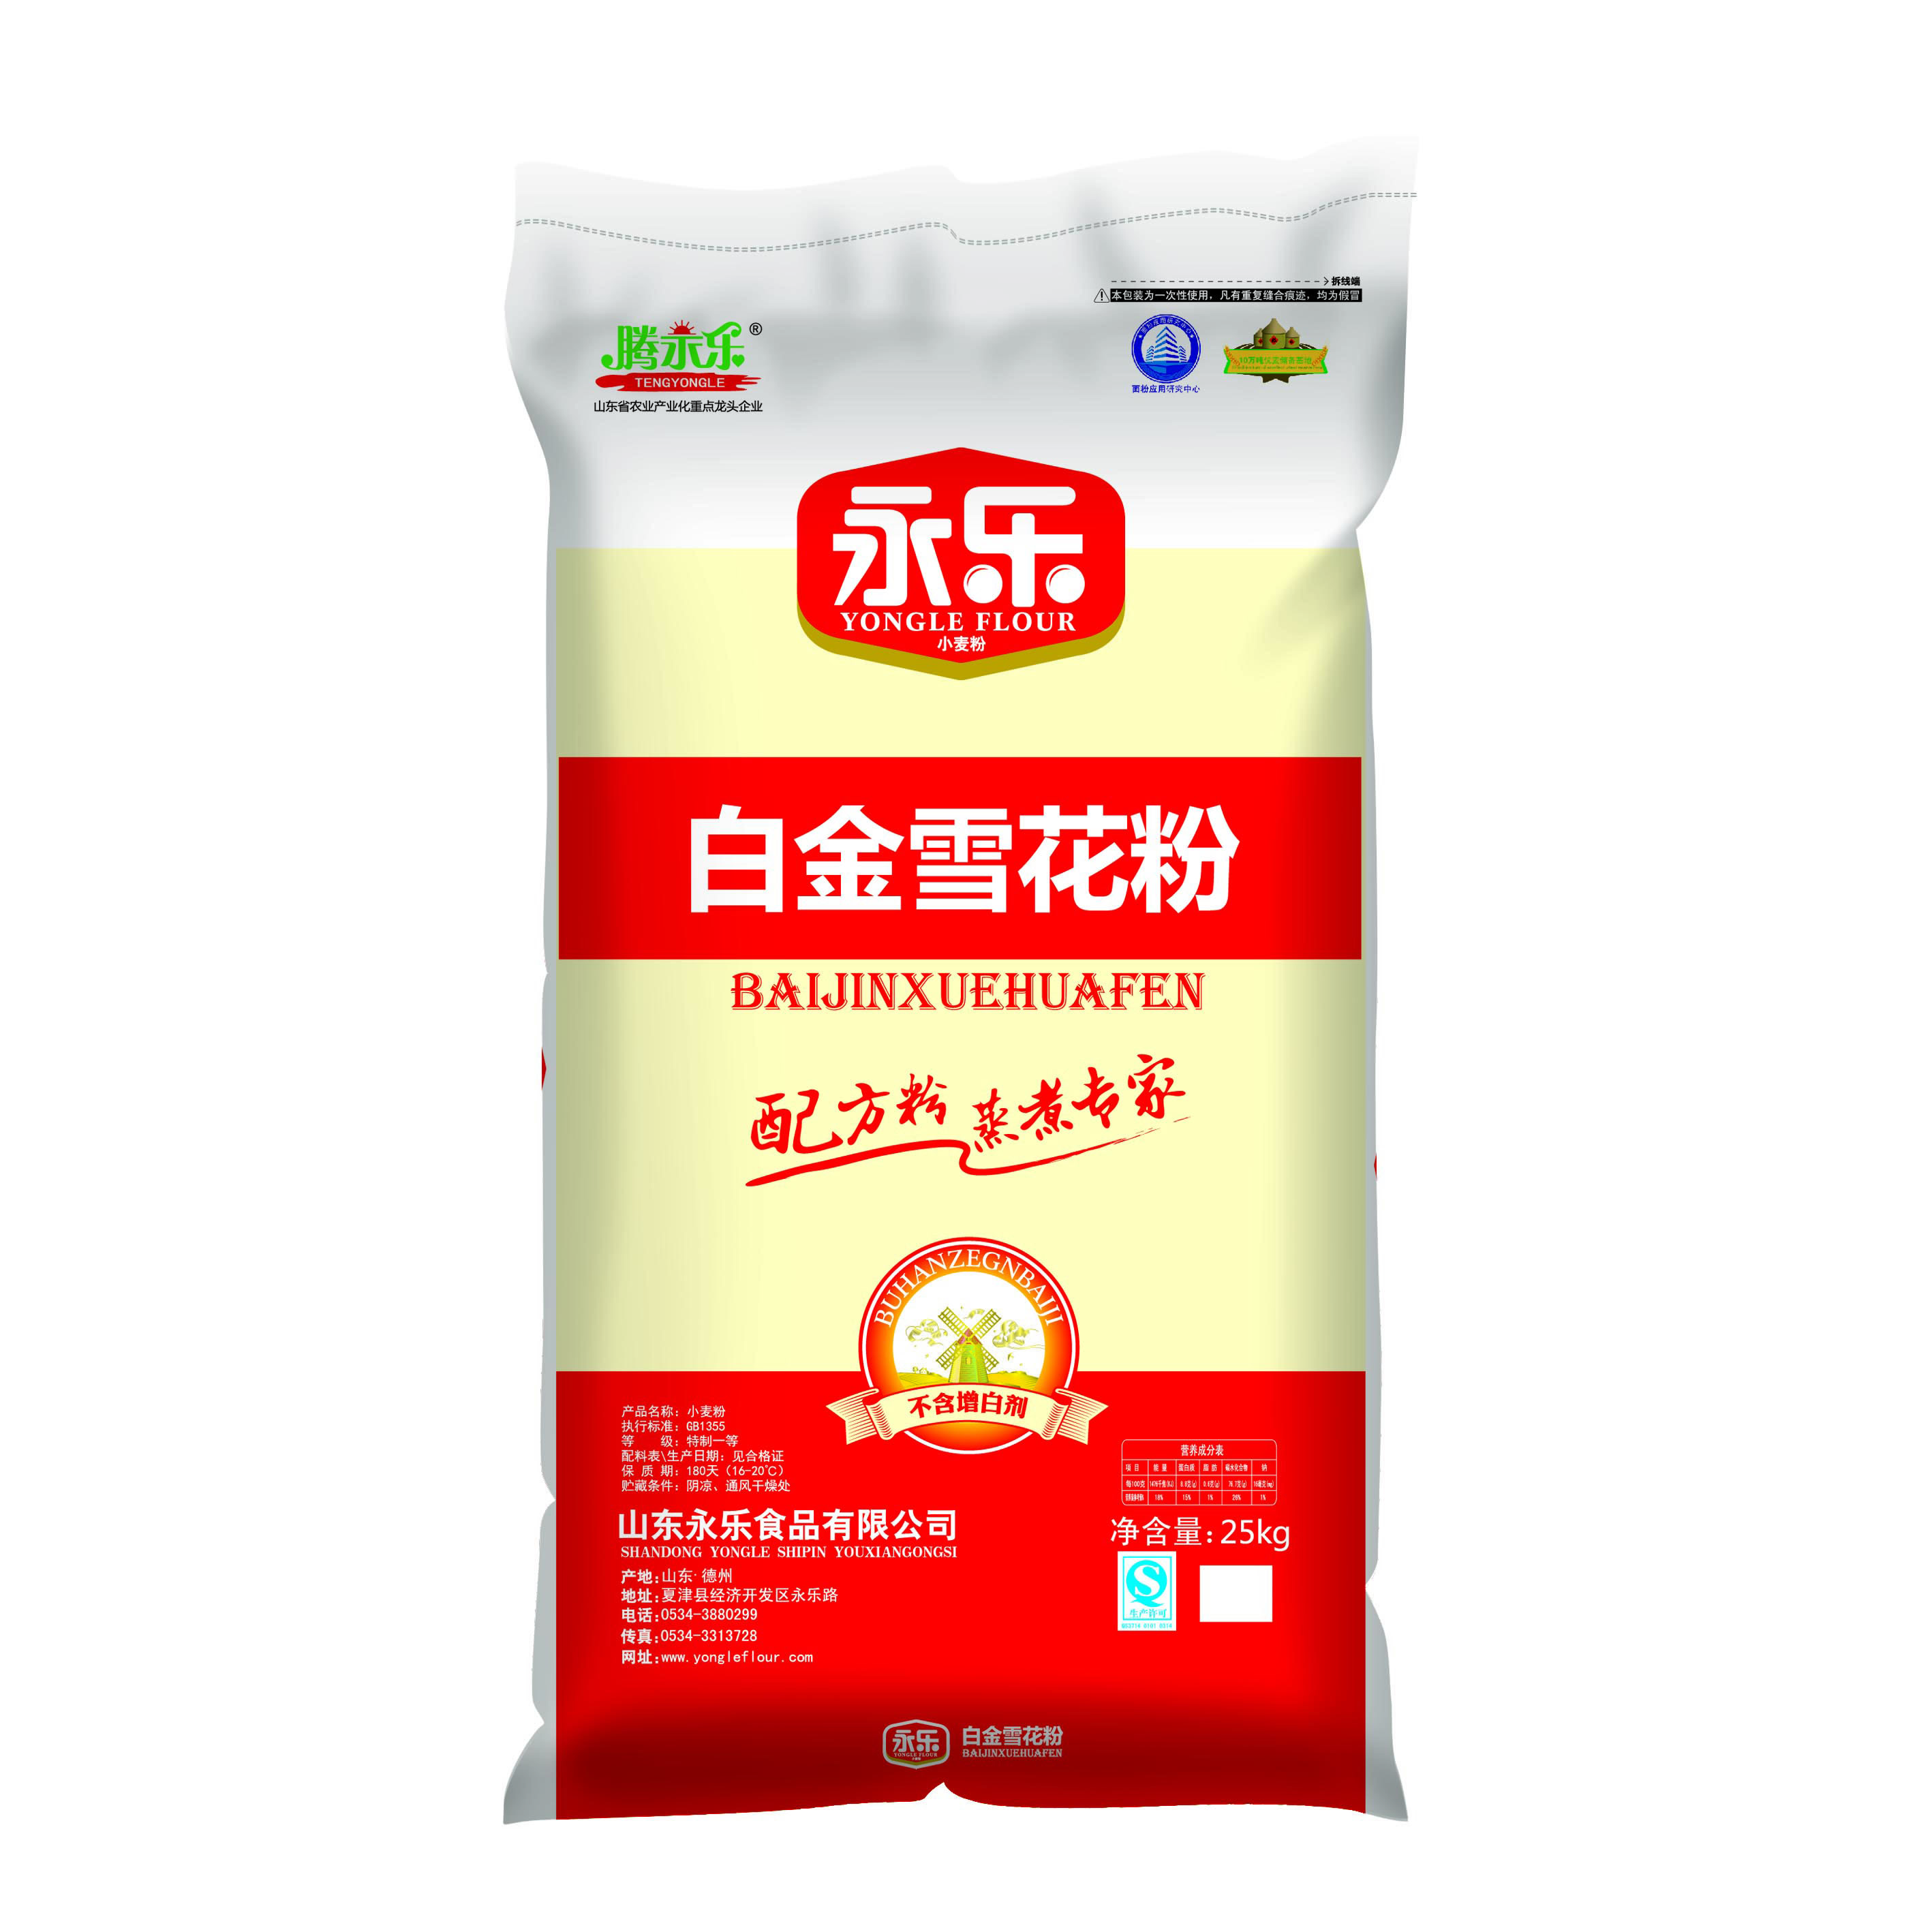 【厂家直销】司顿精纯蓬灰兰州拉面剂强筋剂 面粉改良剂500g 包邮-Taobao